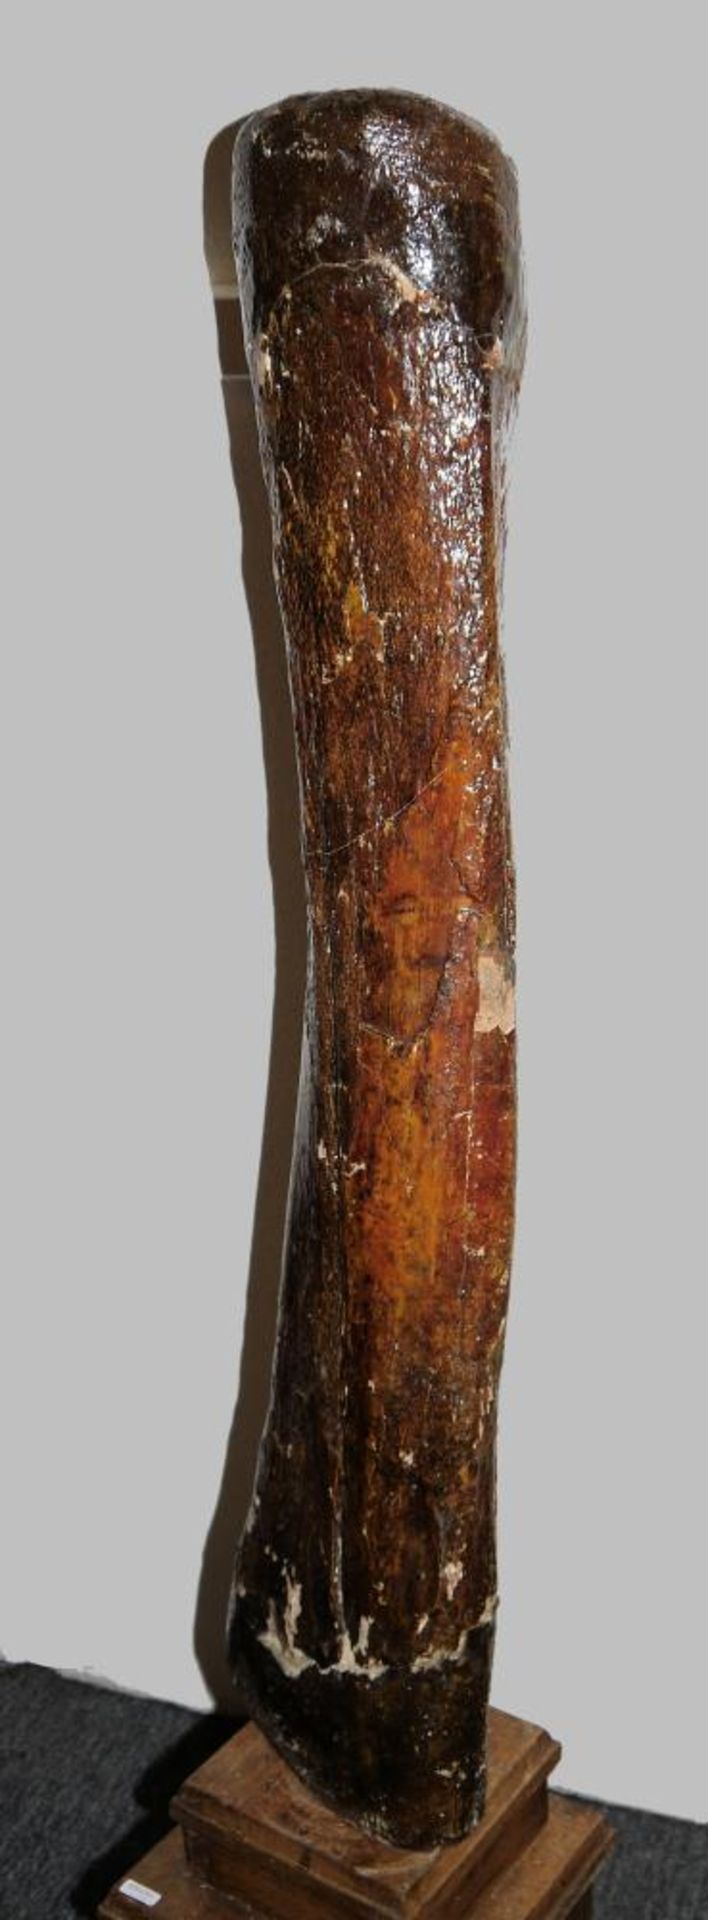 Fossiler Schenkelknochen eines Mammuts Großer Knochen, wohl Oberschenkel des Hinterlaufs eines - Image 2 of 2